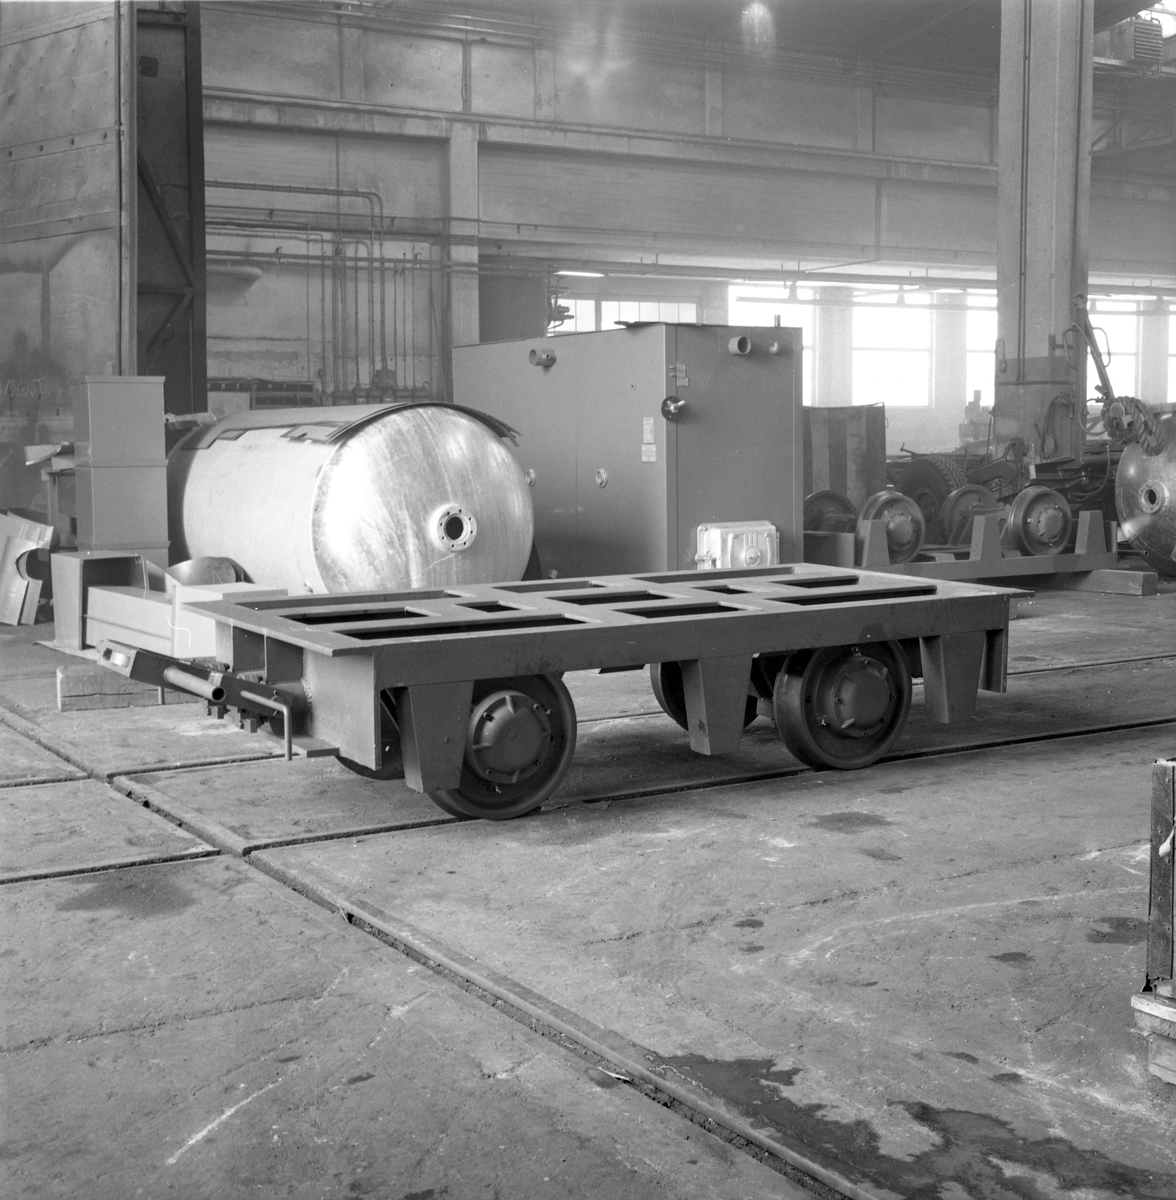 Vagn, den 28 mars 1963
Swendsén & Wikström värmepannefabrik, Brynäs. På 1940-talet
hade man 300 anställda. Företaget köptes upp av Svenska Järnvägsverkstad och fick 1955 namnet ASJ-PARCA.
